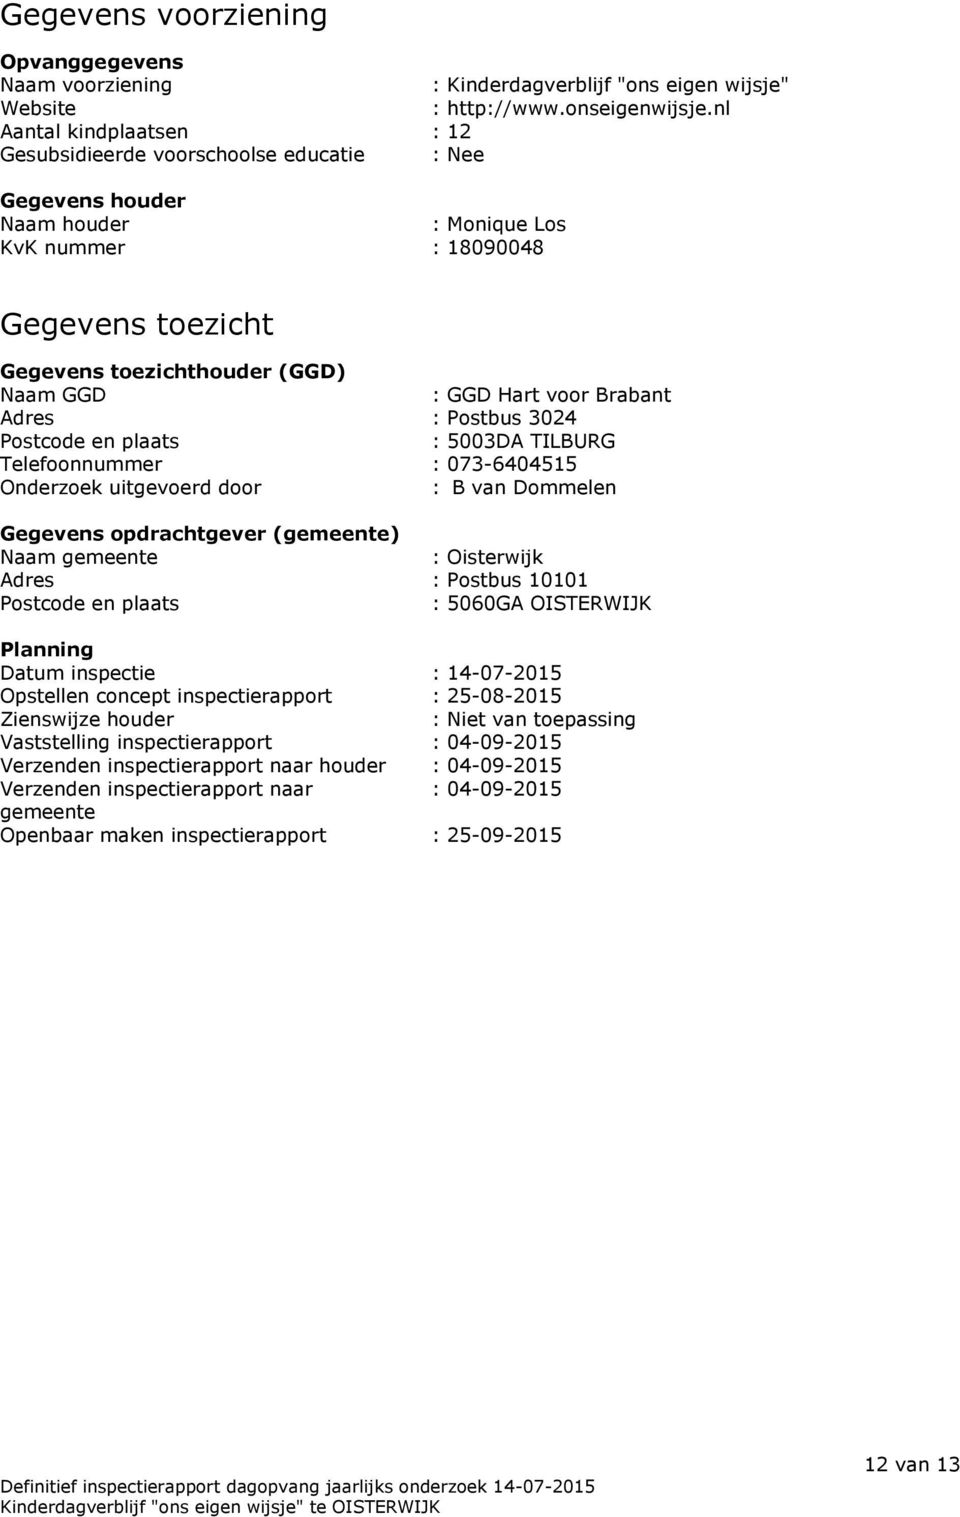 Hart voor Brabant Adres : Postbus 3024 Postcode en plaats : 5003DA TILBURG Telefoonnummer : 073-6404515 Onderzoek uitgevoerd door : B van Dommelen Gegevens opdrachtgever (gemeente) Naam gemeente :